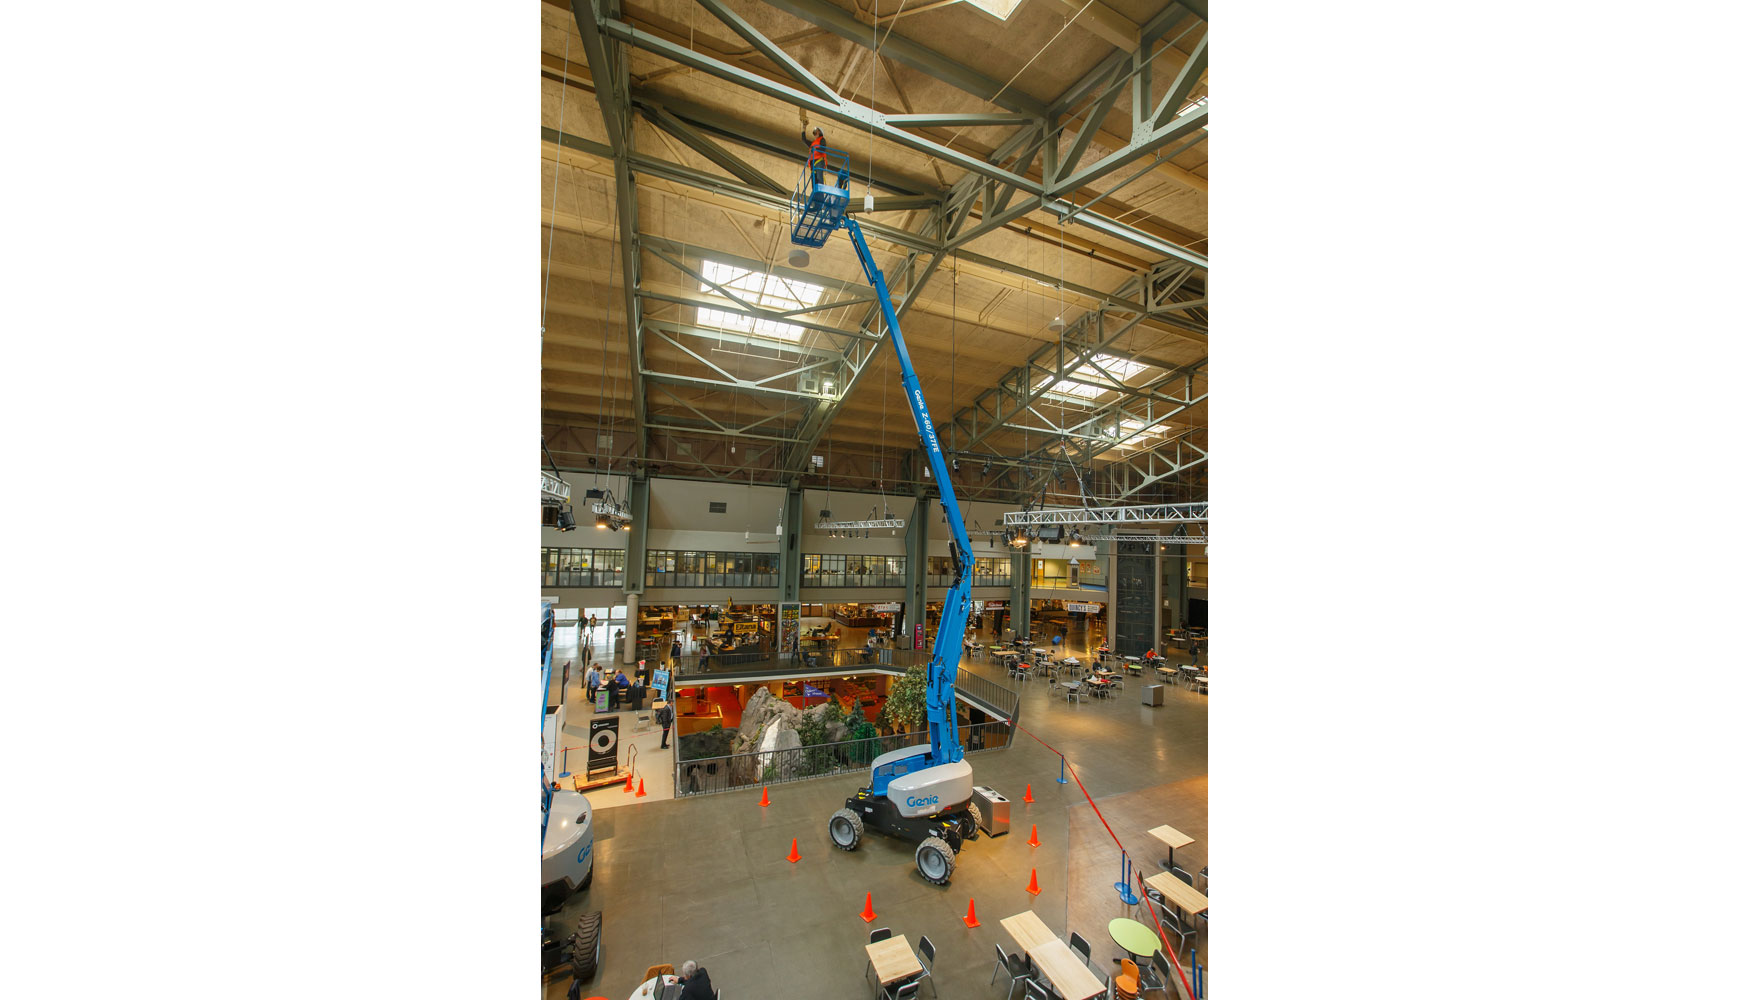 La nueva plataforma de Genie ofrece una altura de trabajo de 20,16 m y un alcance horizontal de 11,15 m